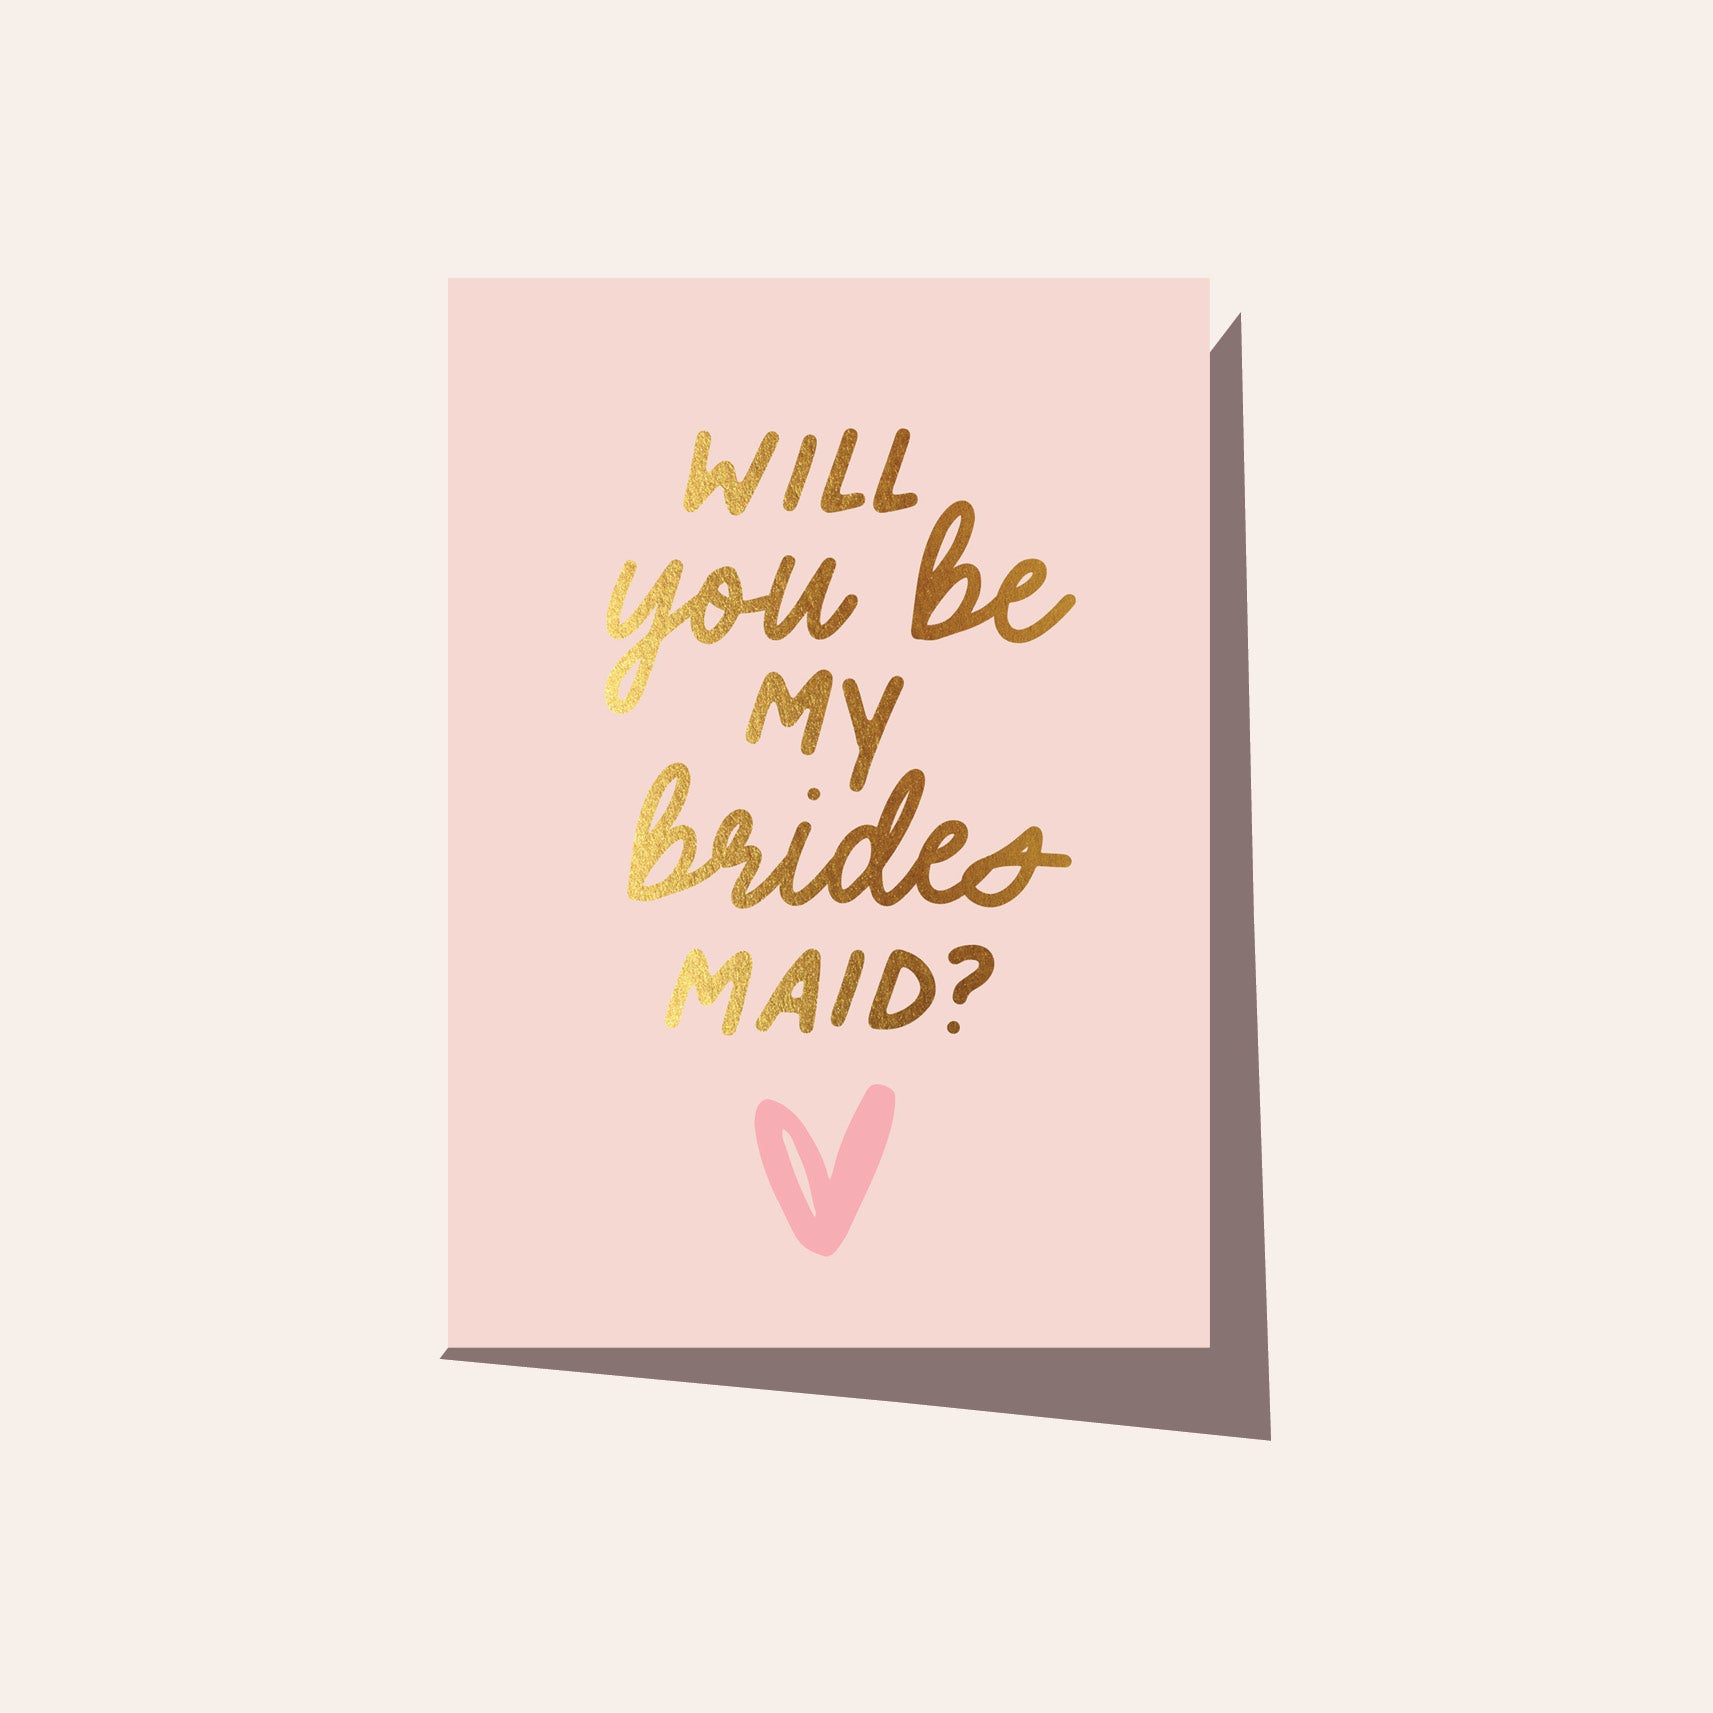 BE MY BRIDESMAID